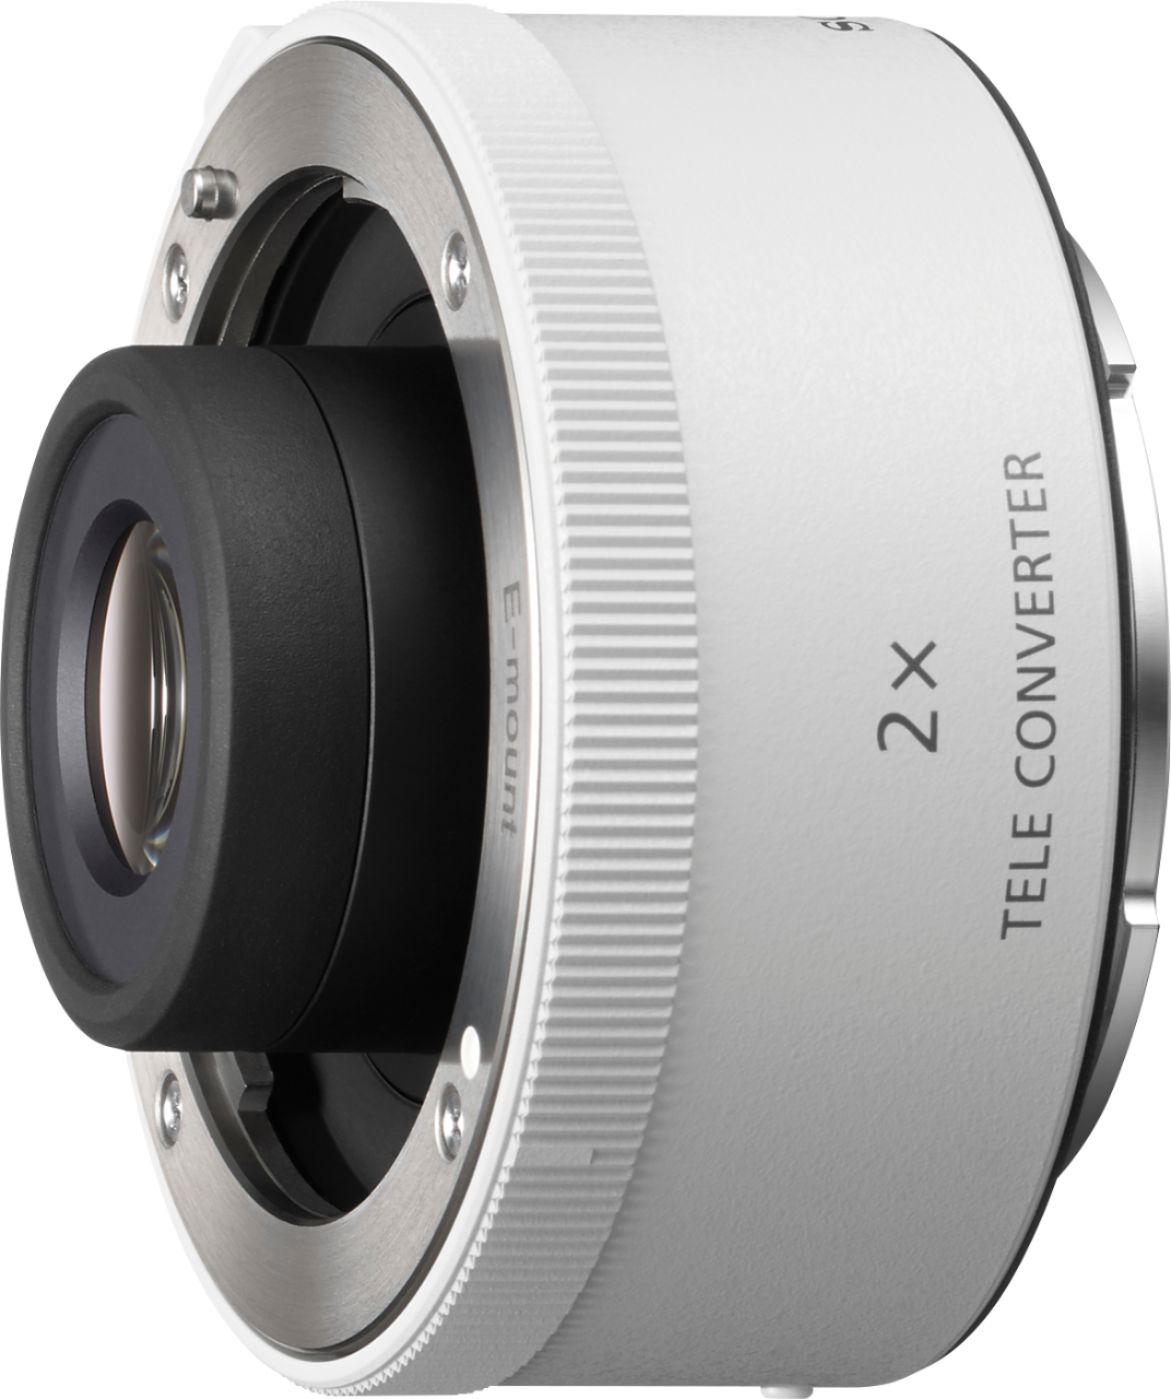 Angle View: Sony - 2.0x Teleconverter Lens for Select Lenses - White